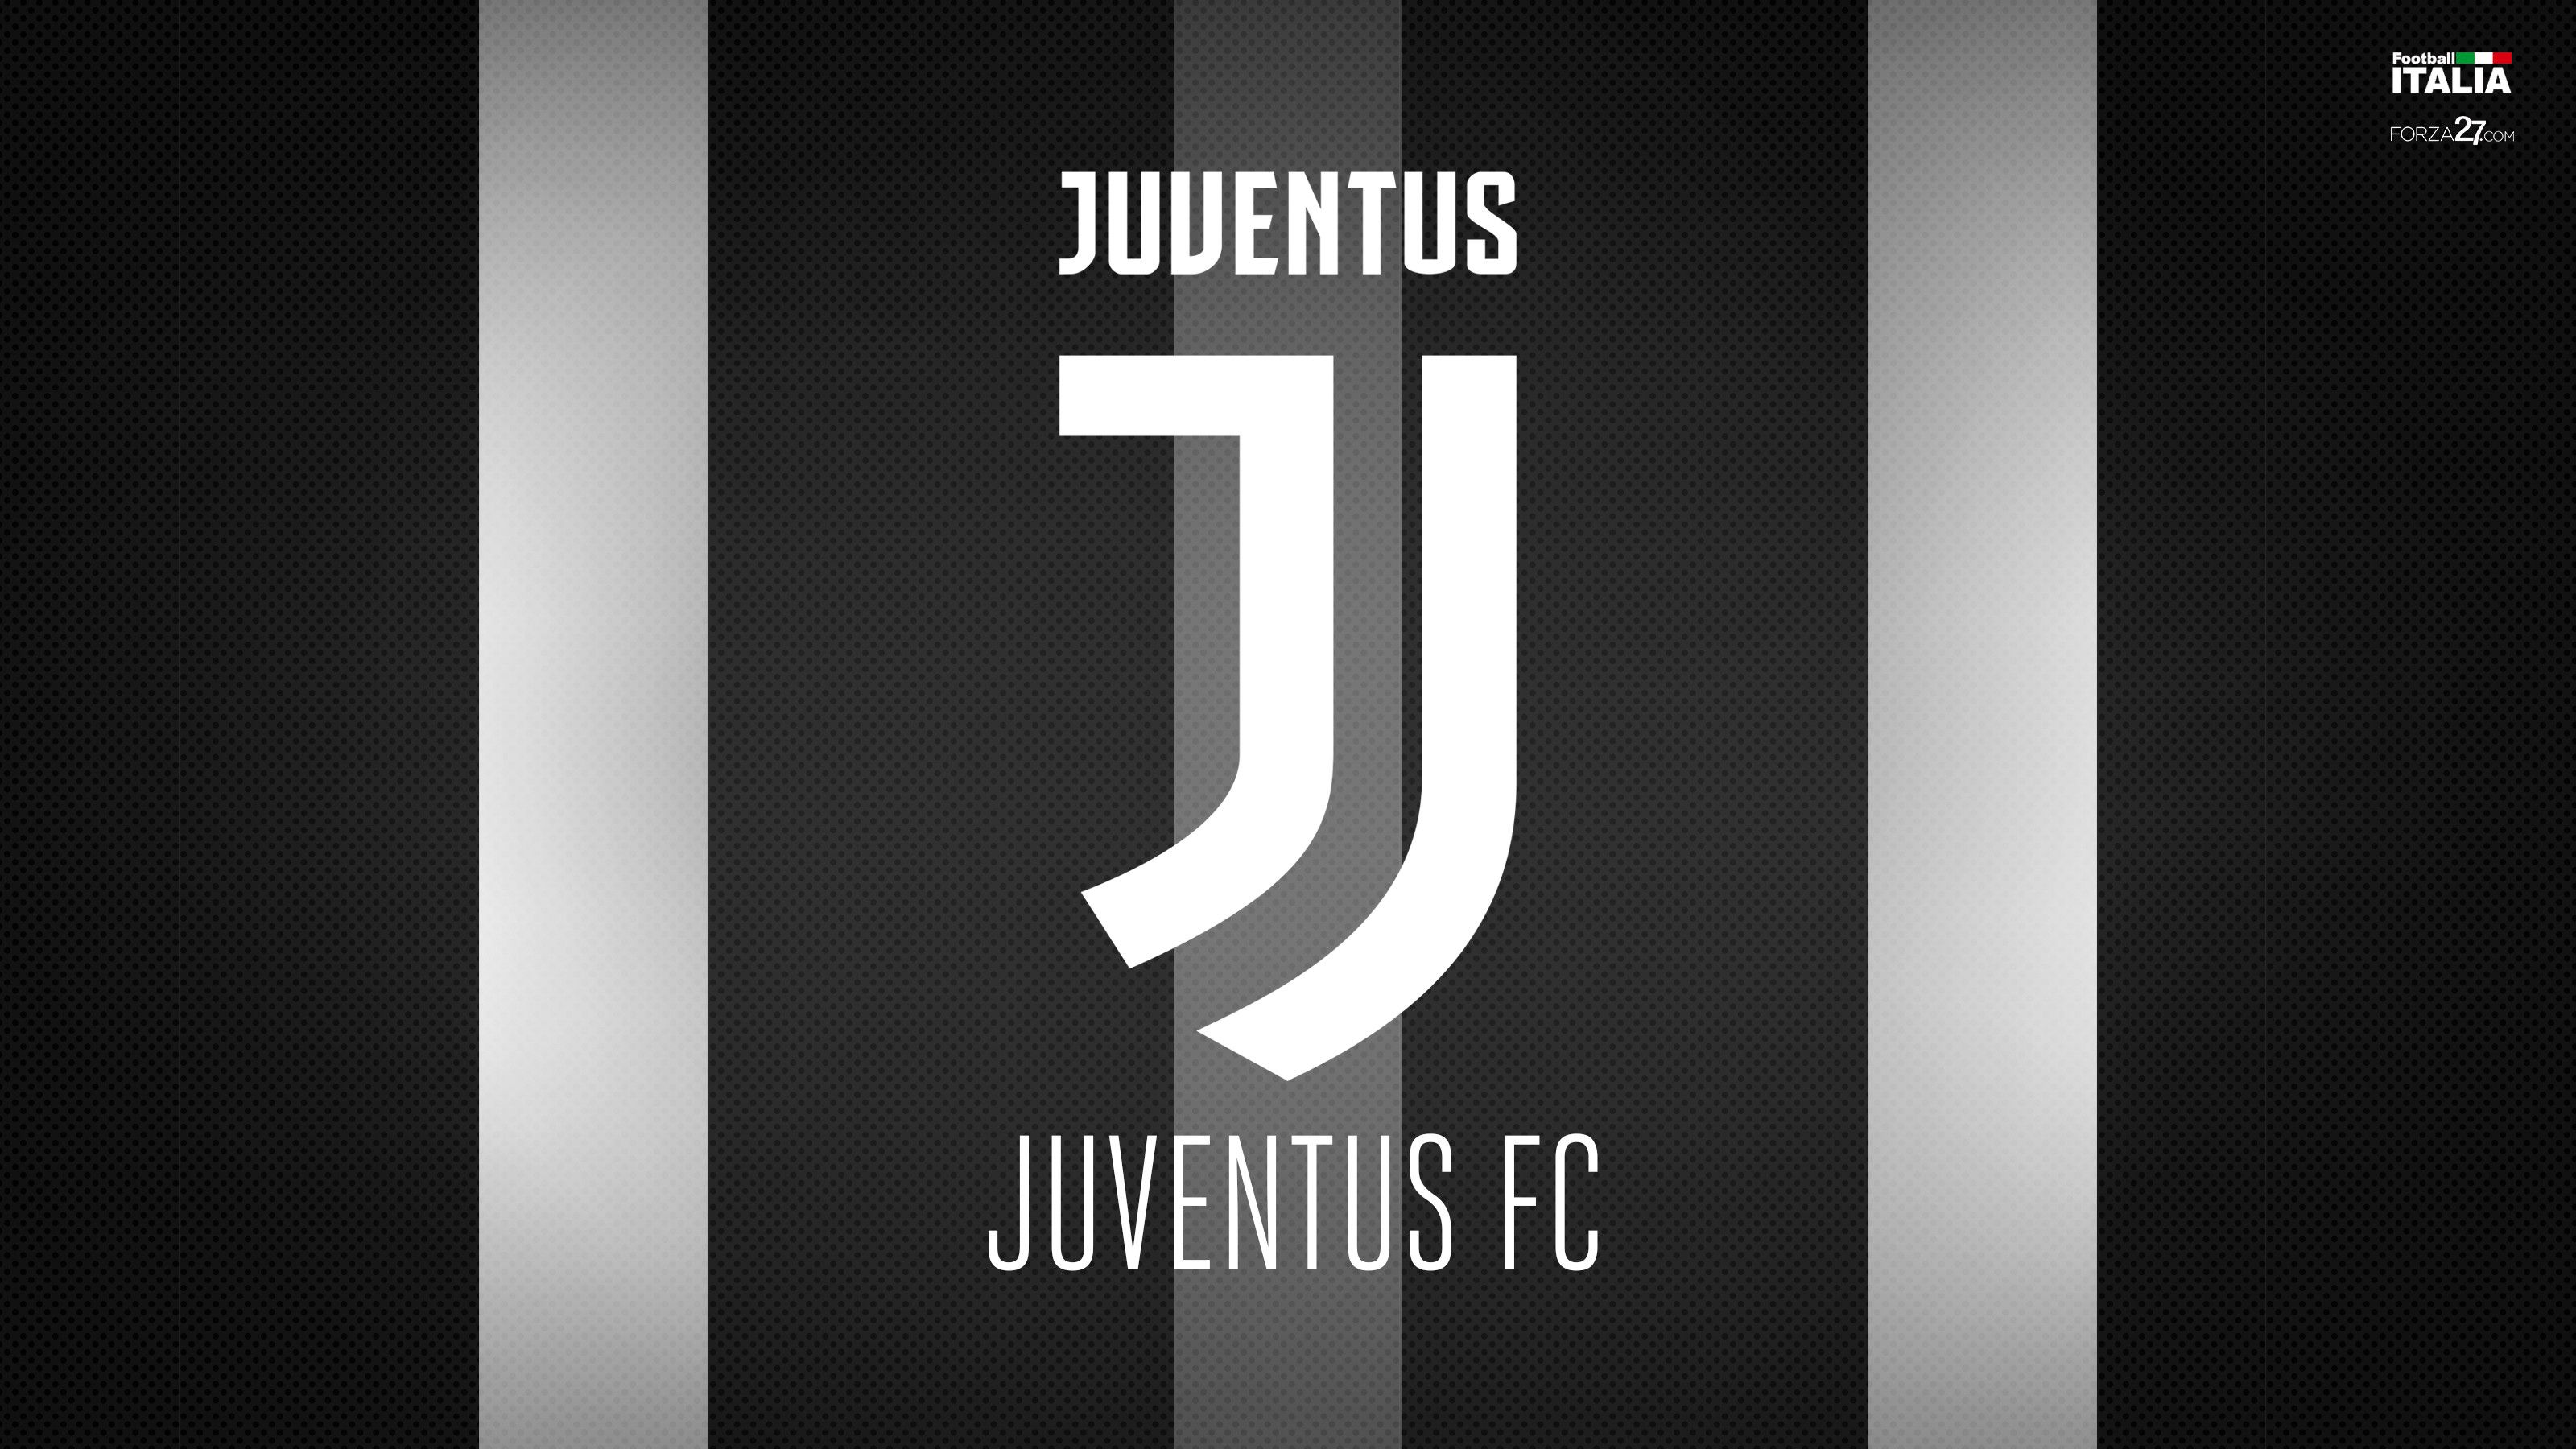 Juventus Iphone Wallpapers On Wallpaperdog